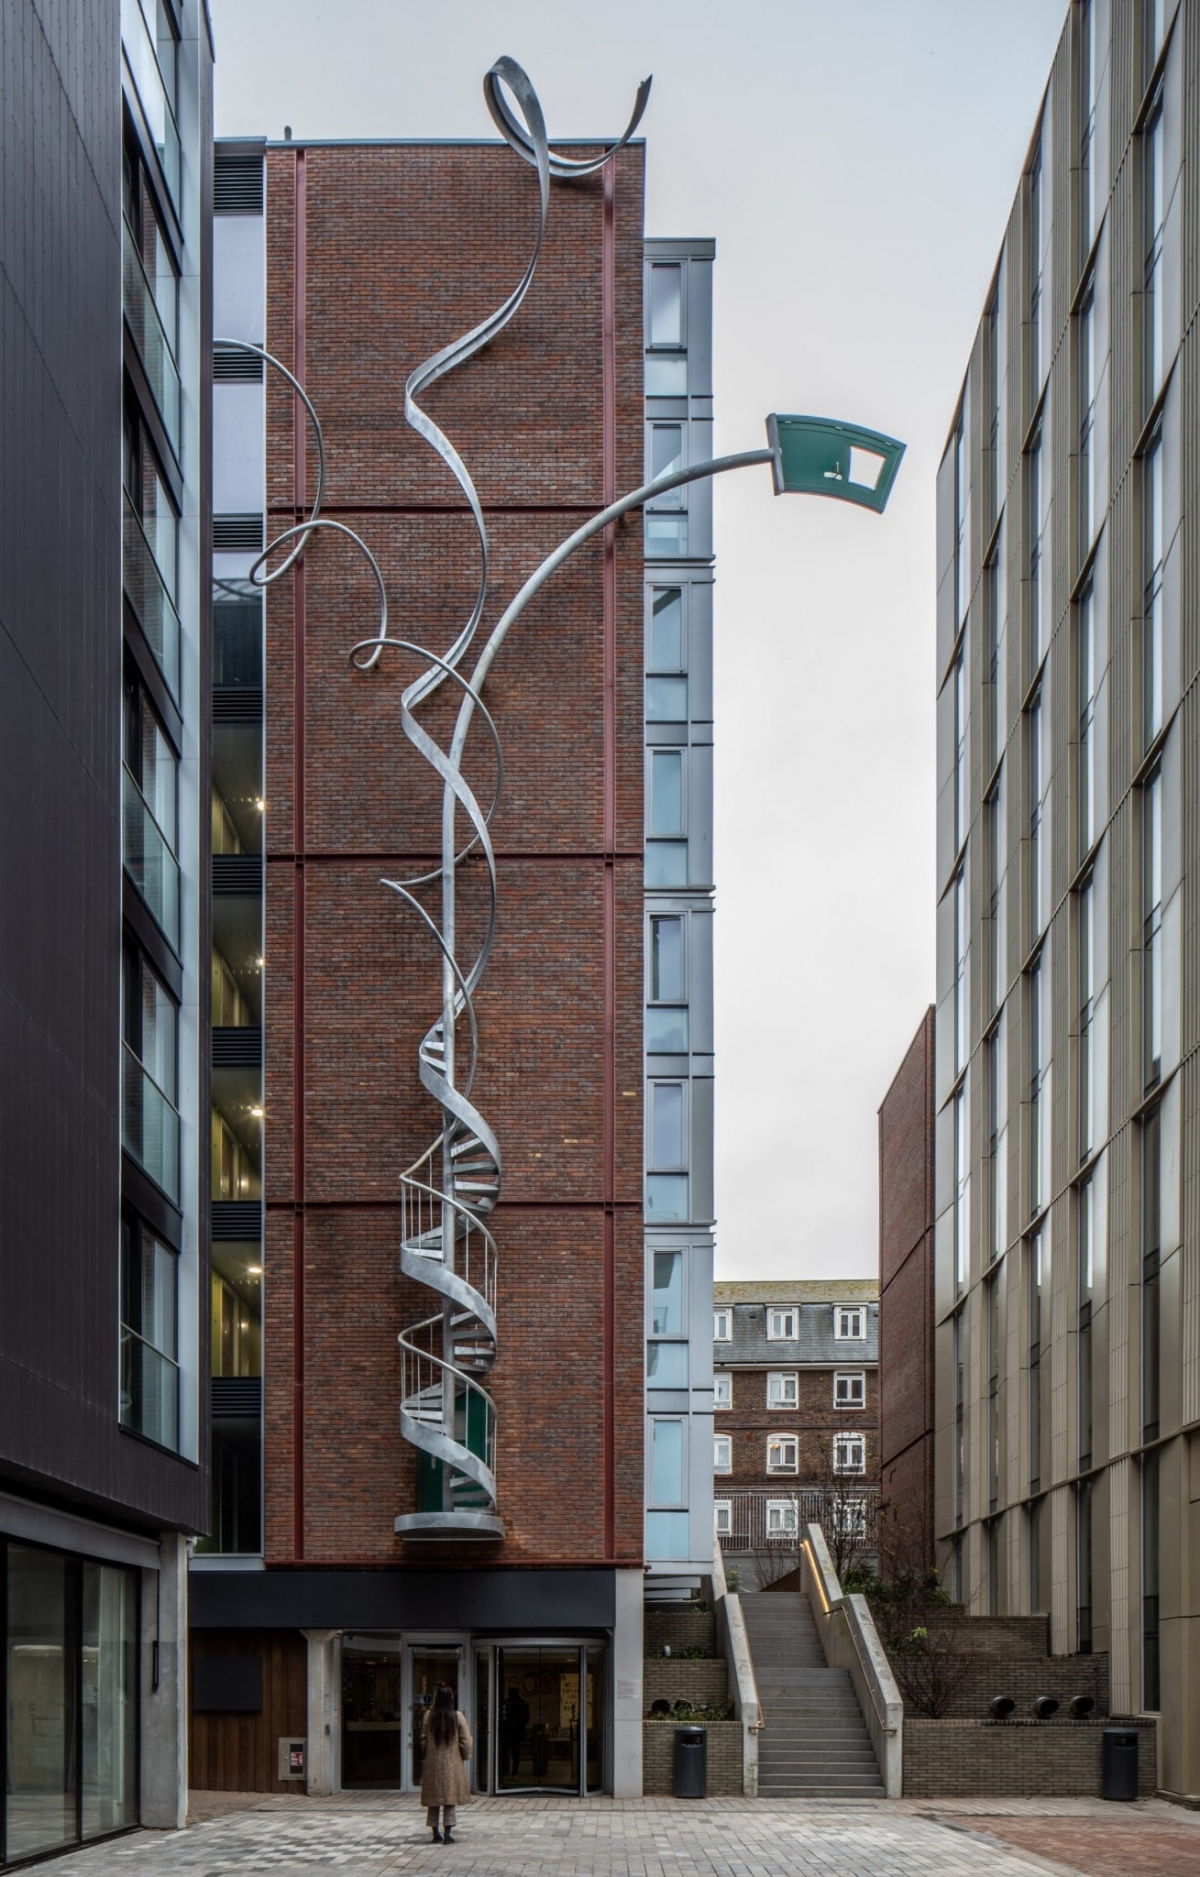 Alex Chinneck Spiral Staircase Architectural Sculpture